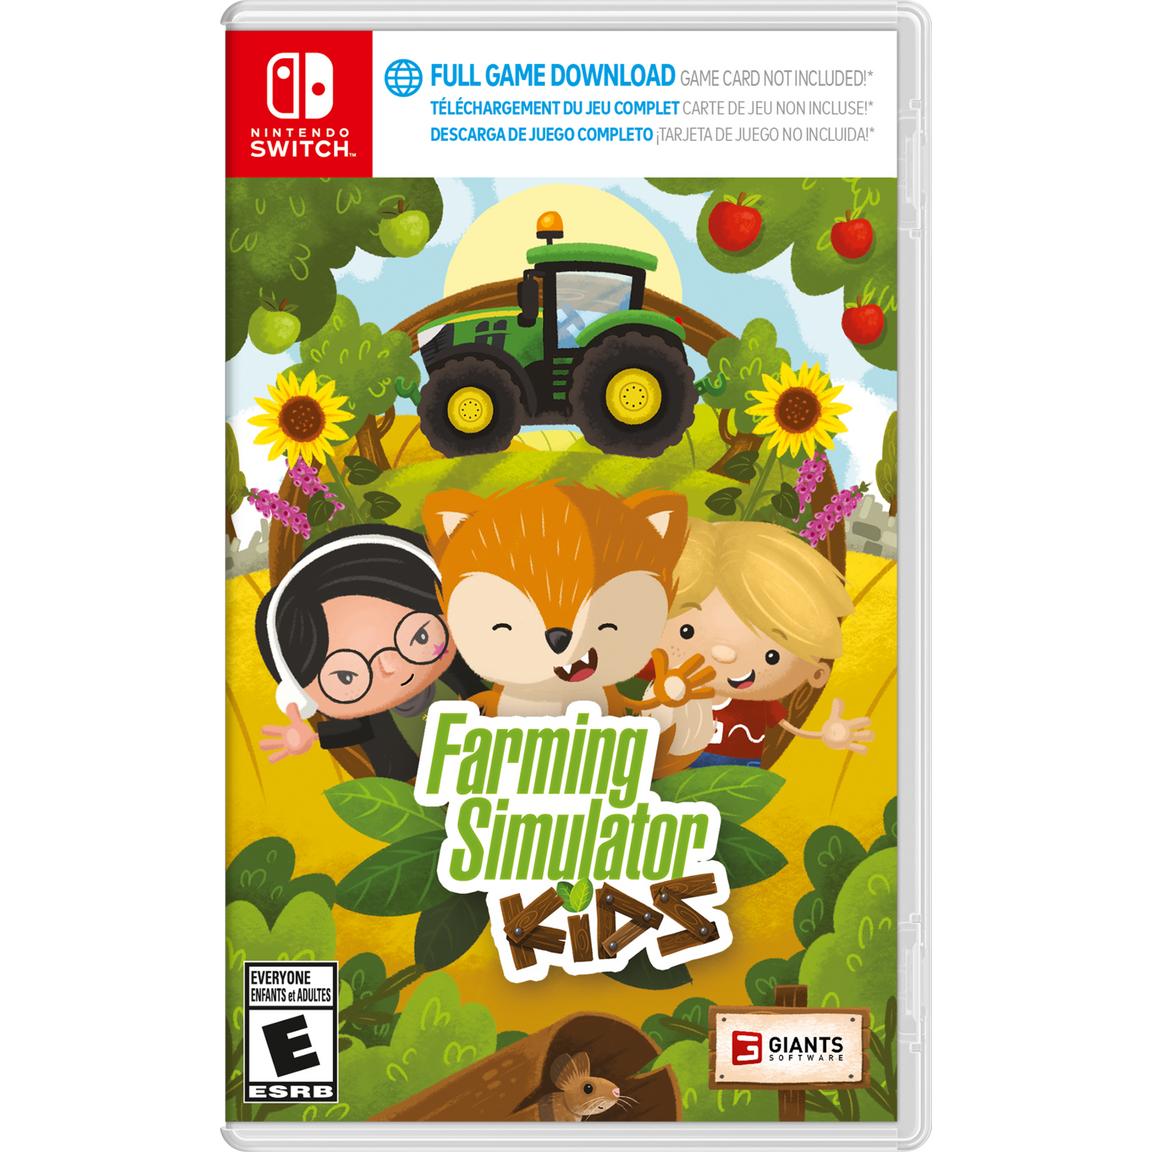 Видеоигра Farming Simulator Kids - Nintendo Switch видеоигра farming simulator kids nintendo switch